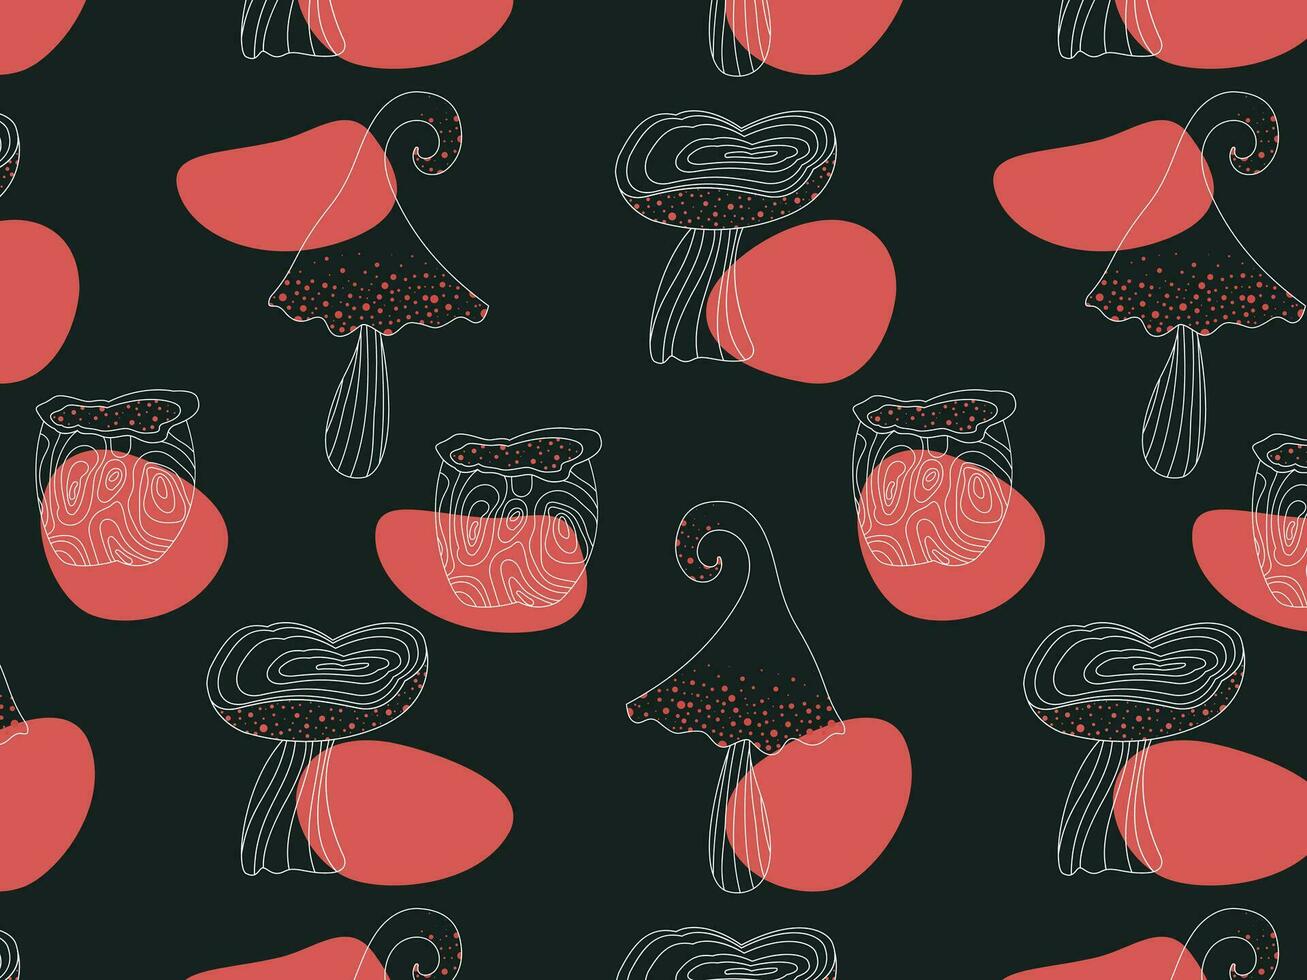 abstrakt sömlös mönster av svamp på en mörk bakgrund, linjär teckning, ritad för hand, vektor illustration. fläckar av röd Färg. design för utskrift, textilier, papper.